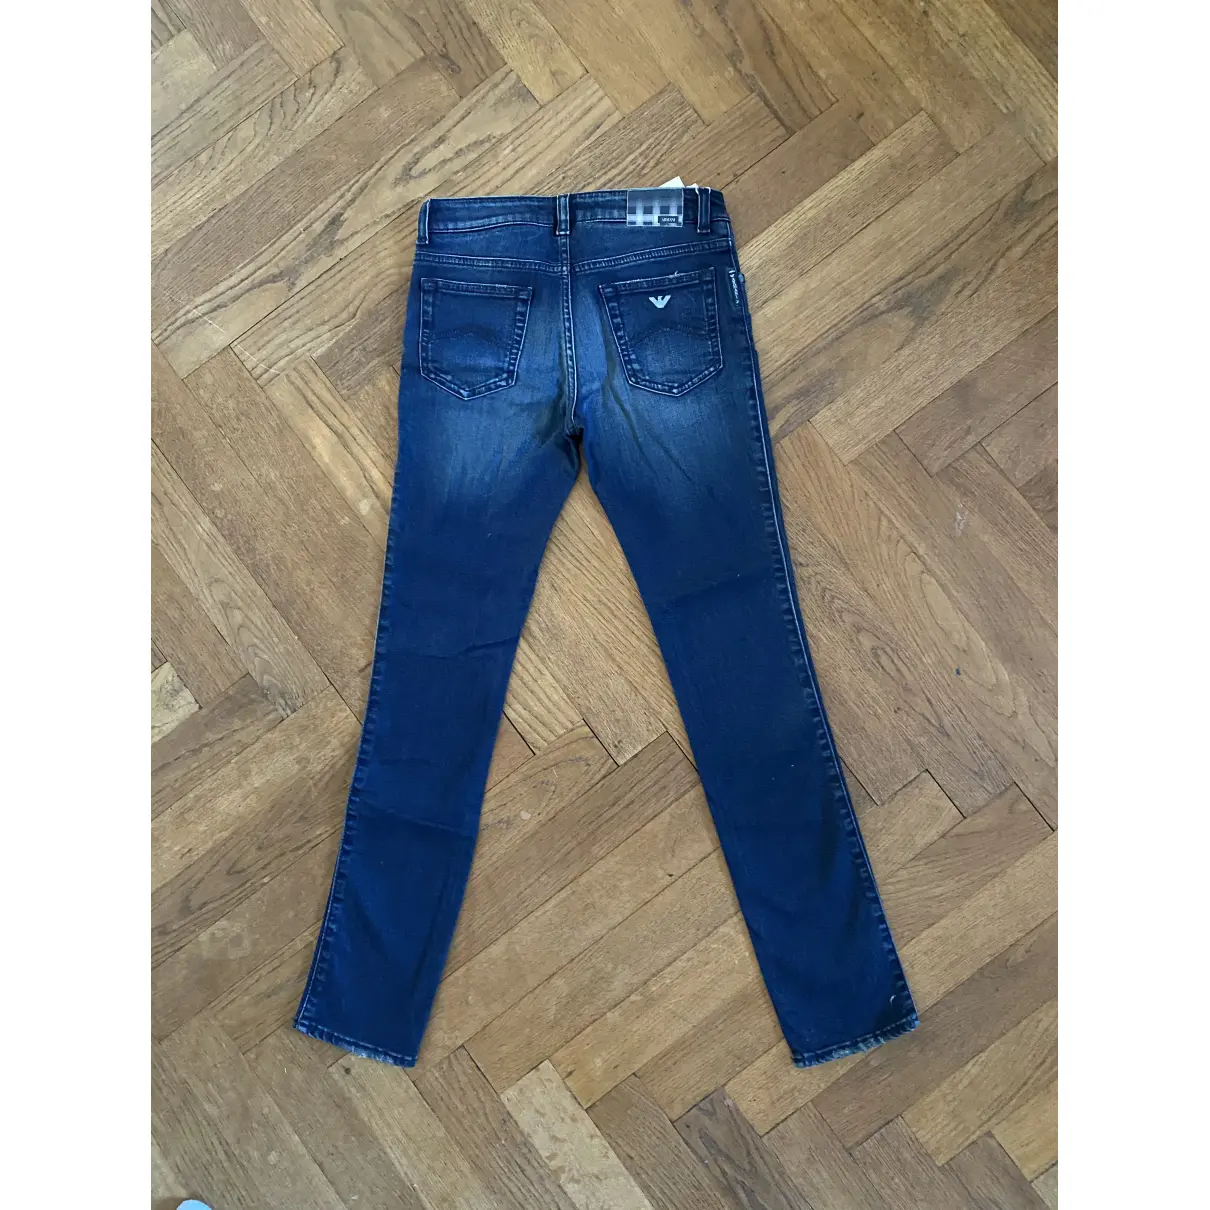 Buy Armani Jeans Blue Cotton Trousers online